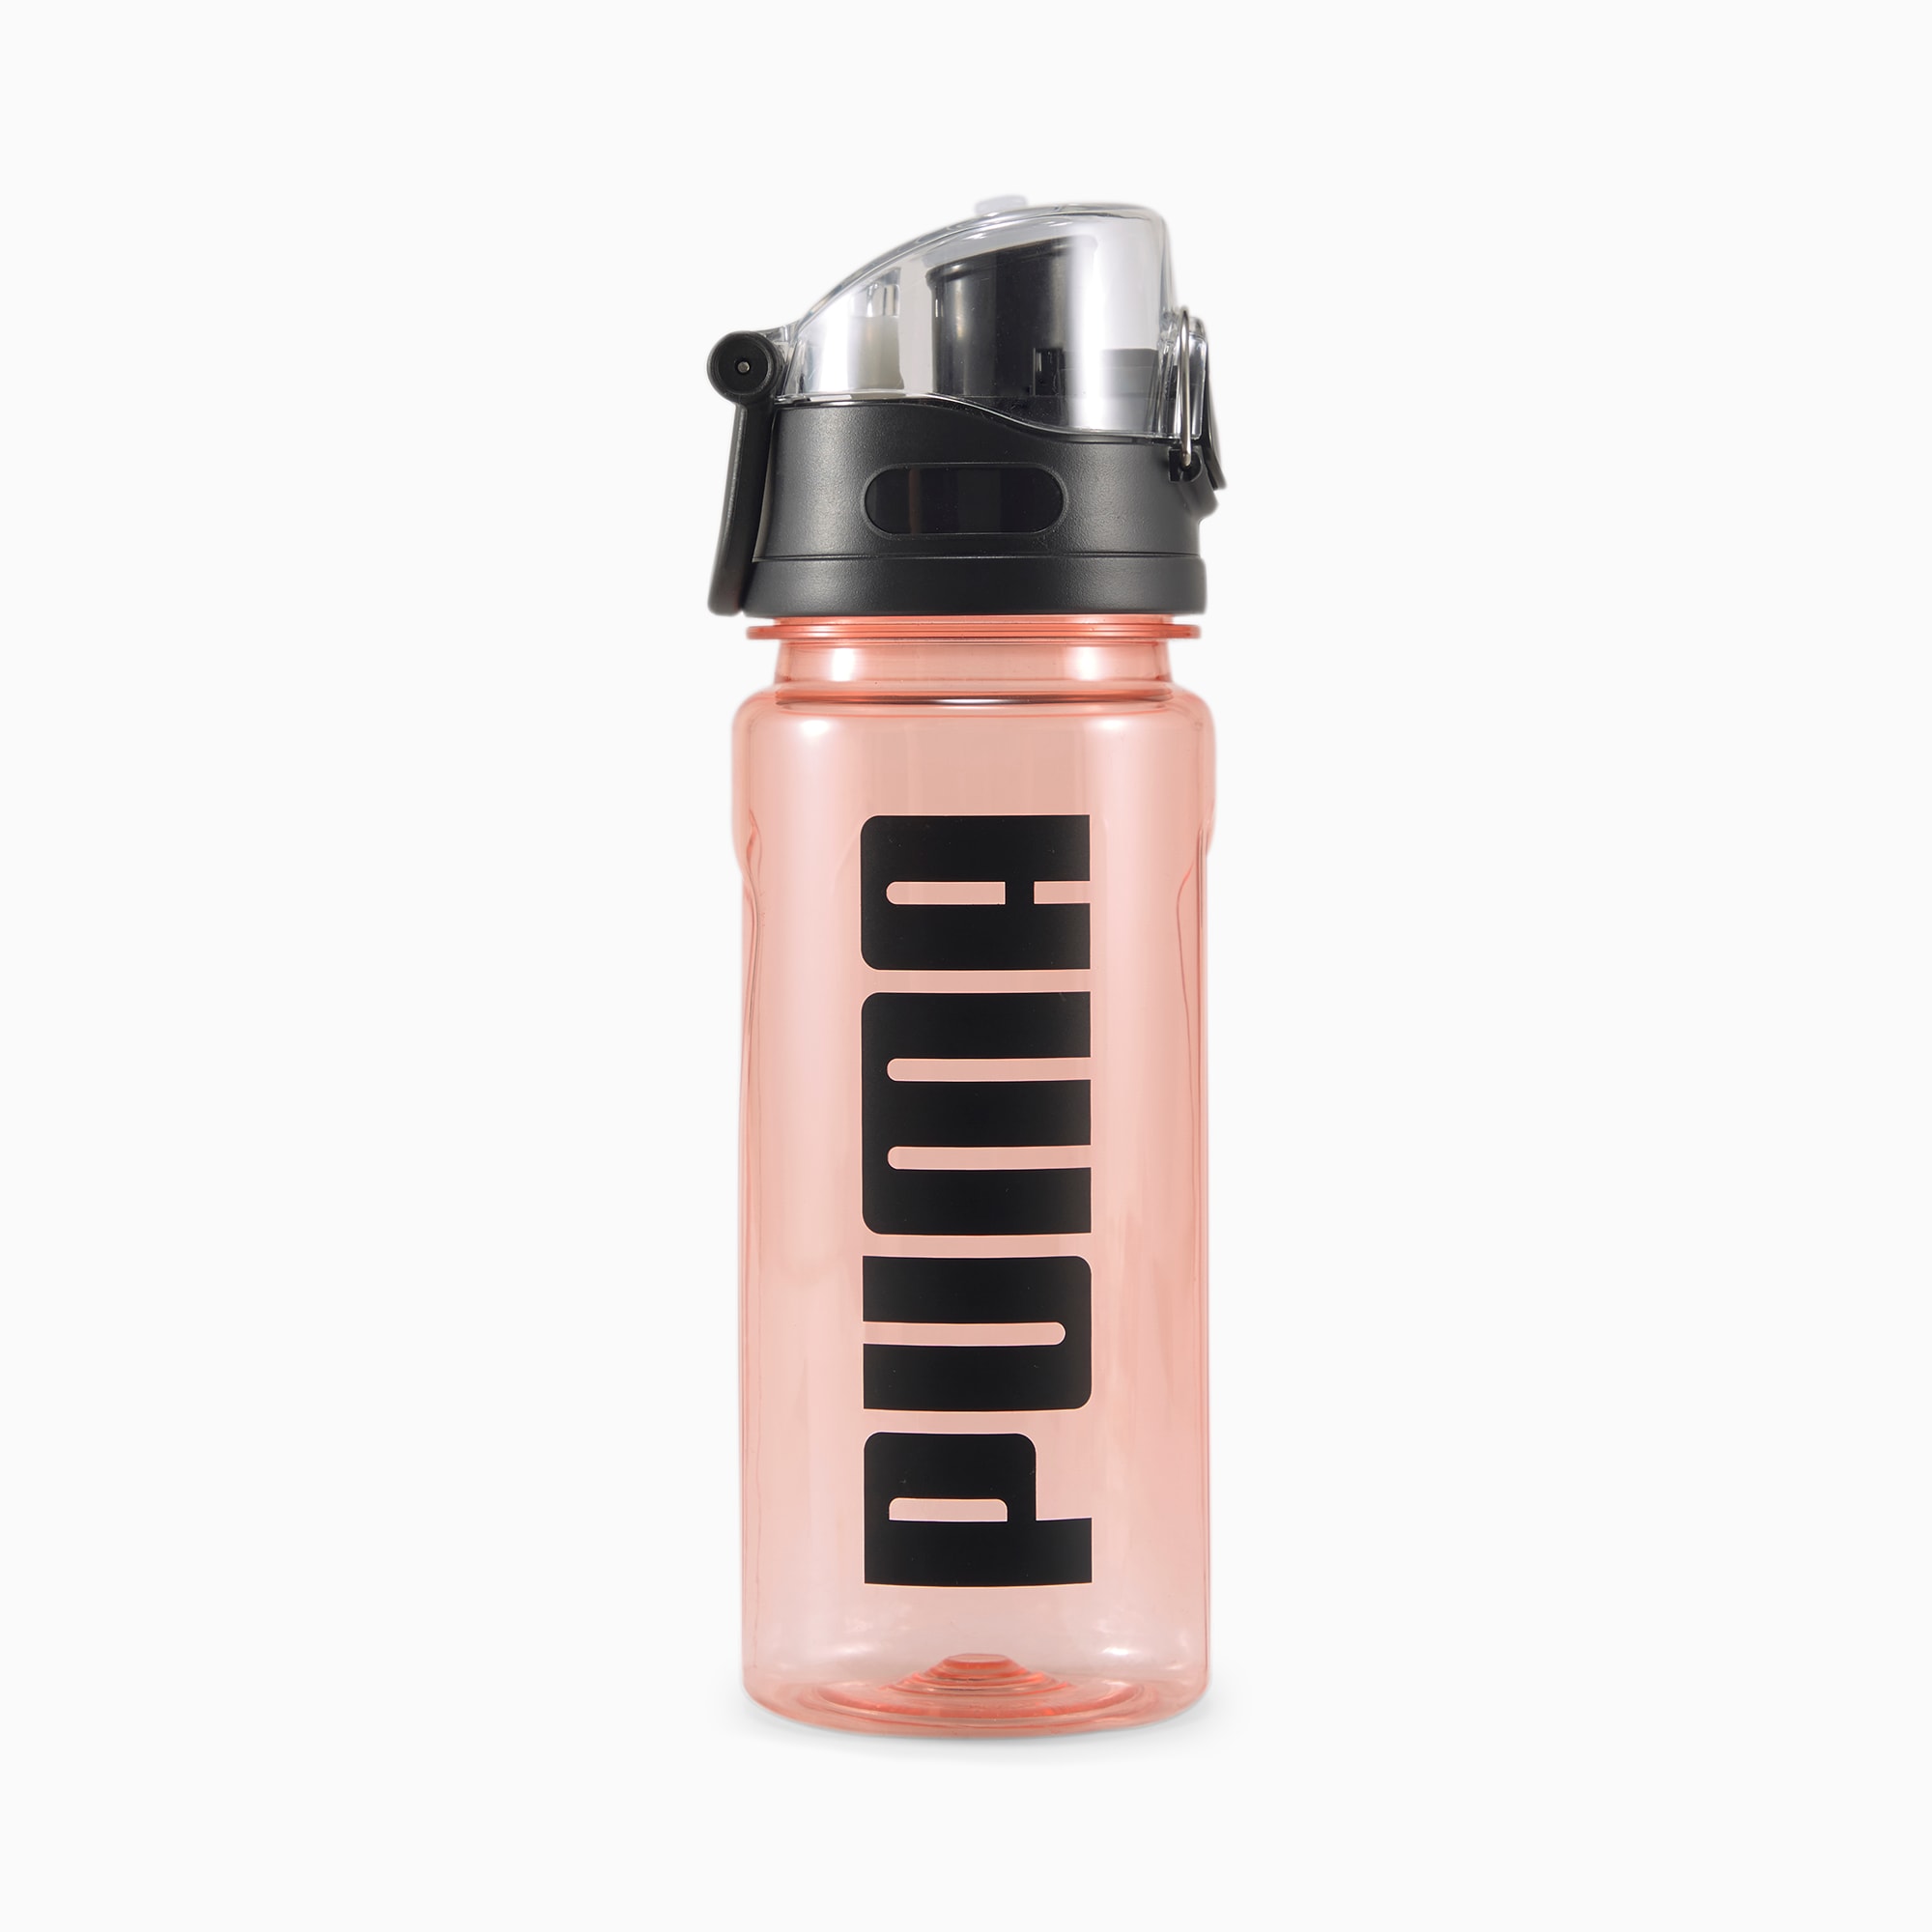 puma drink bottle